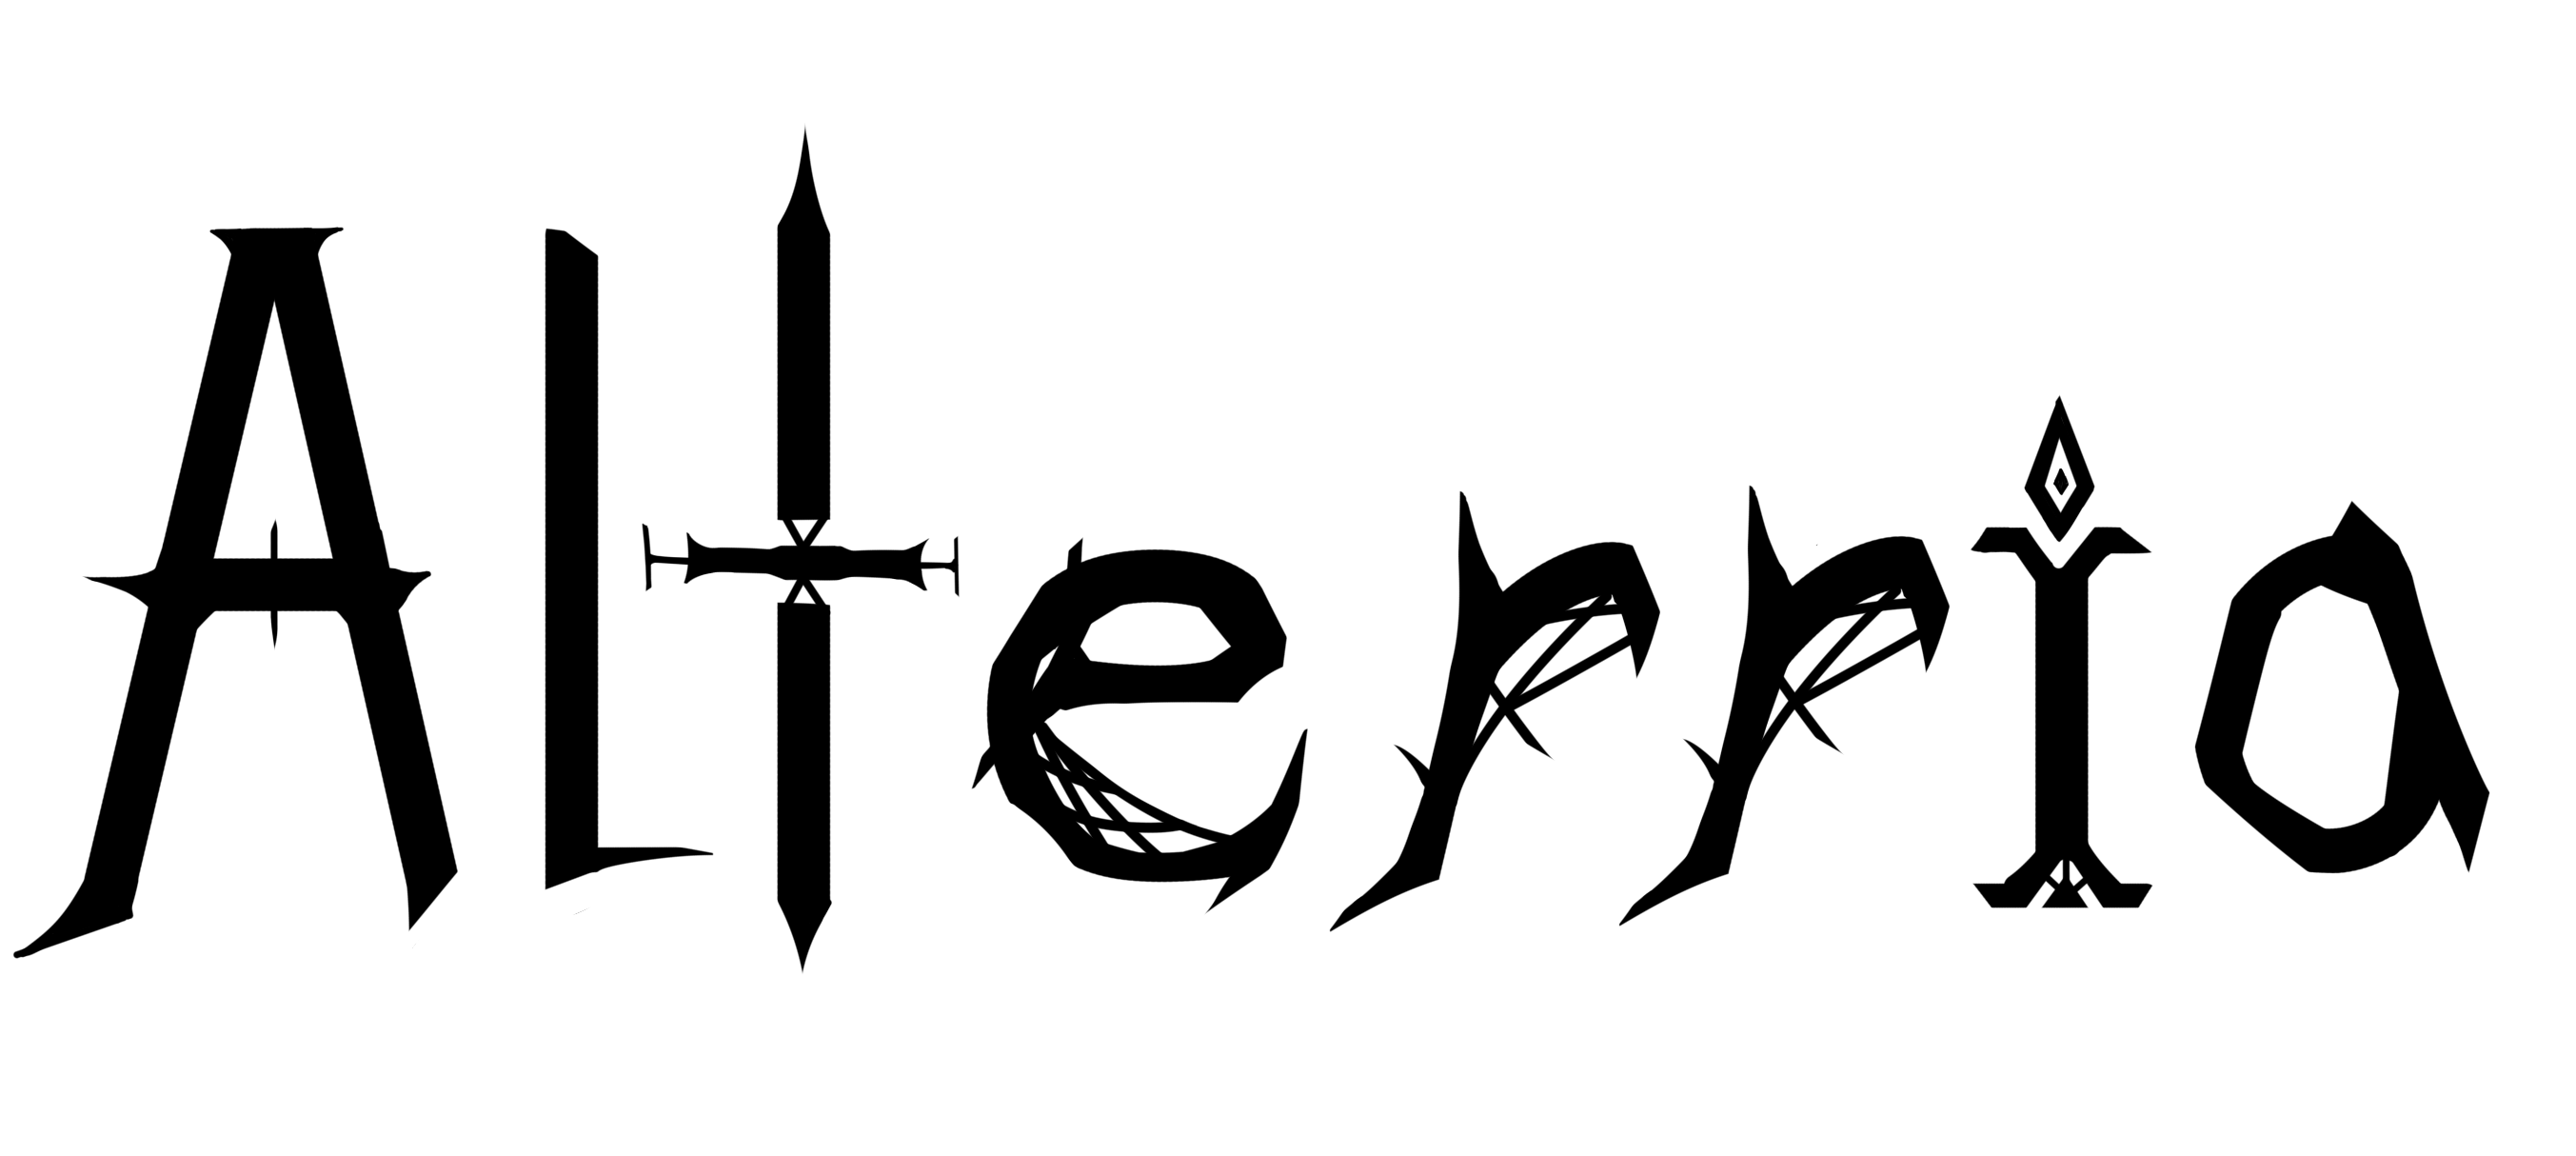 Alterria emblem read take a look at